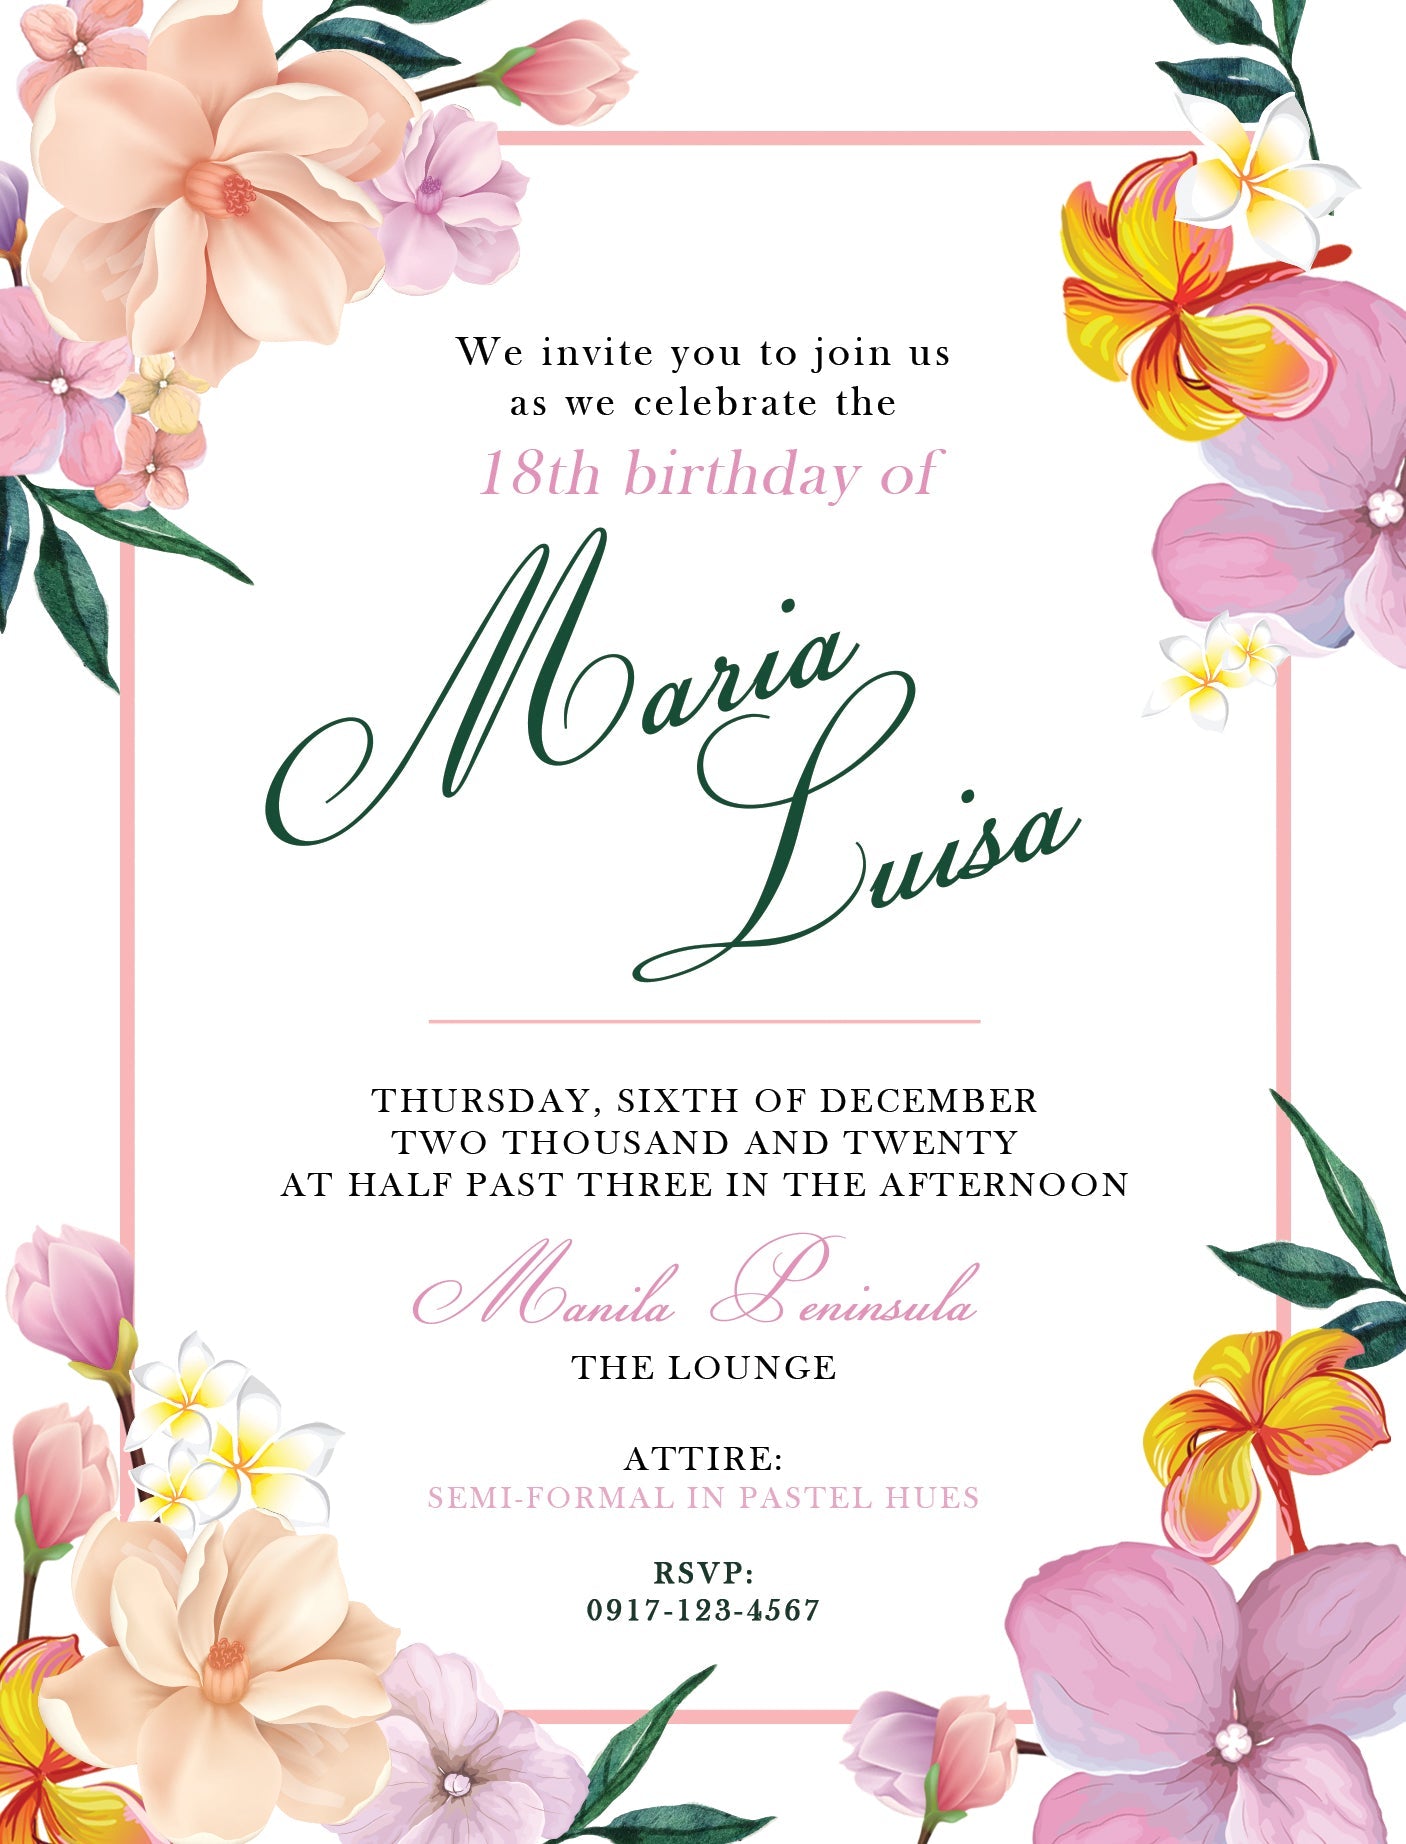 Luisa Debut E-Invite